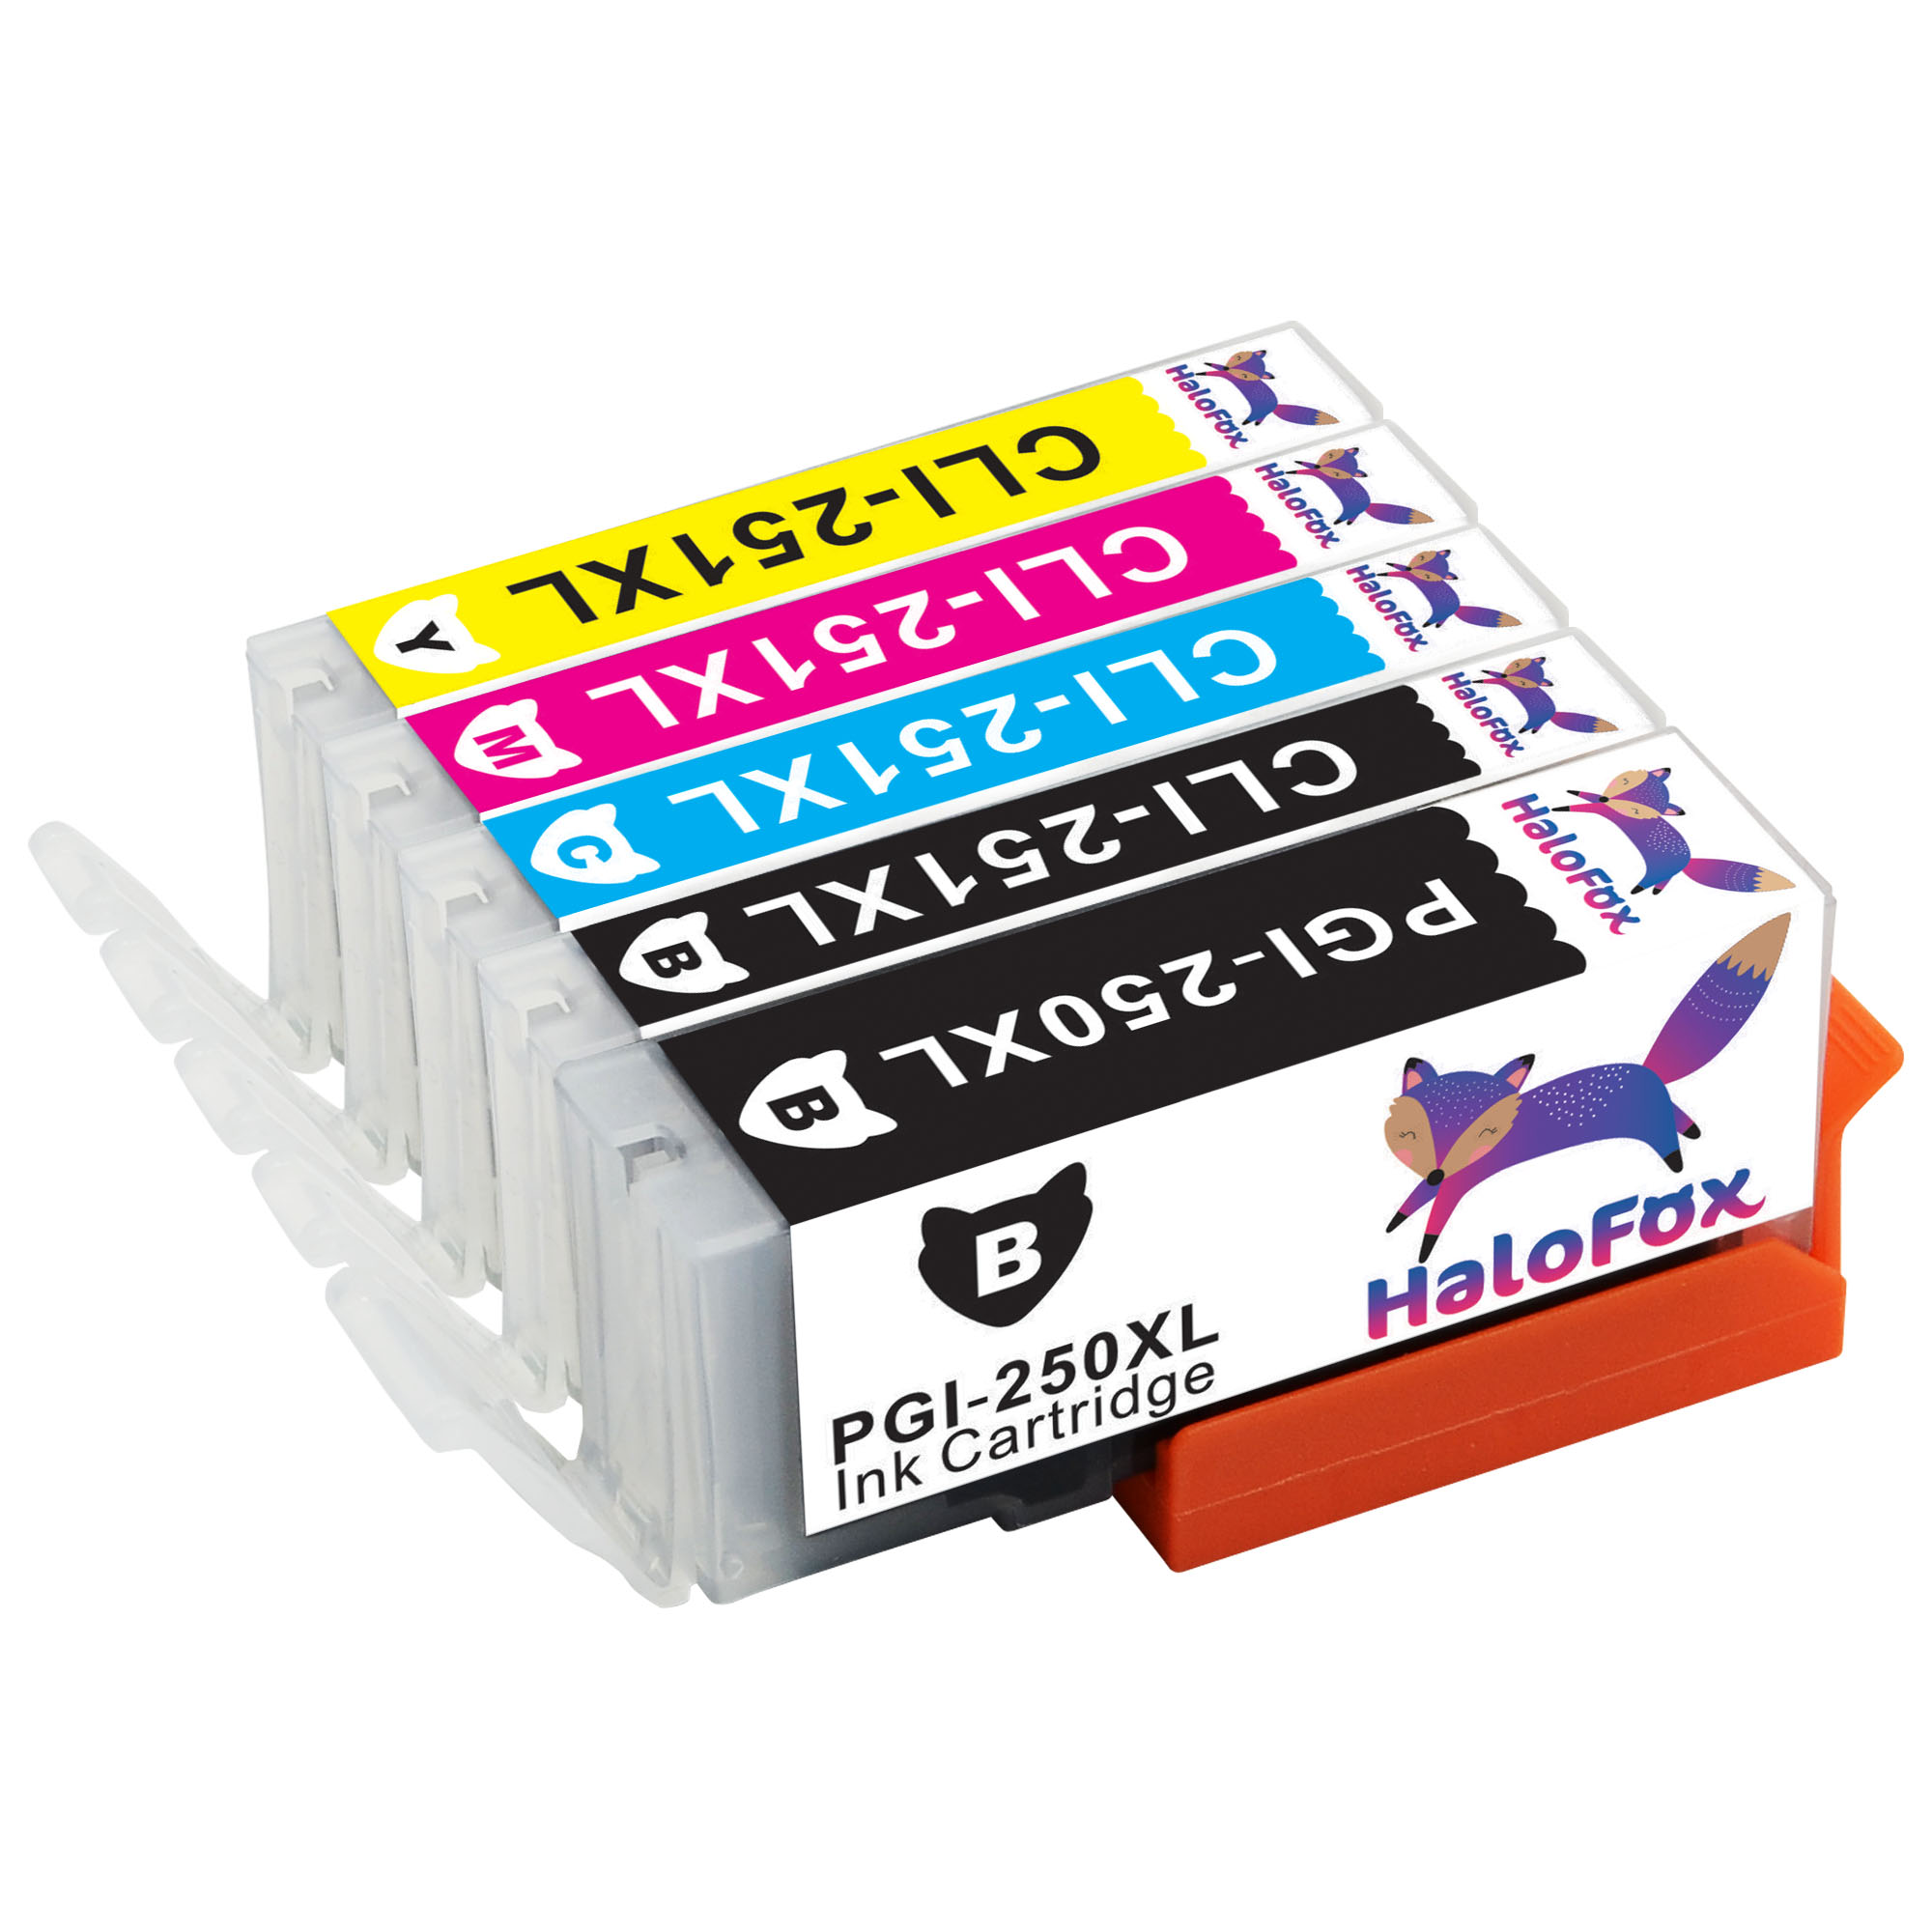 5PK Ink Cartridges PGI-250XL CLI-251XL Compatible for Canon PIXMA mx922 mg7520 (No Gray)